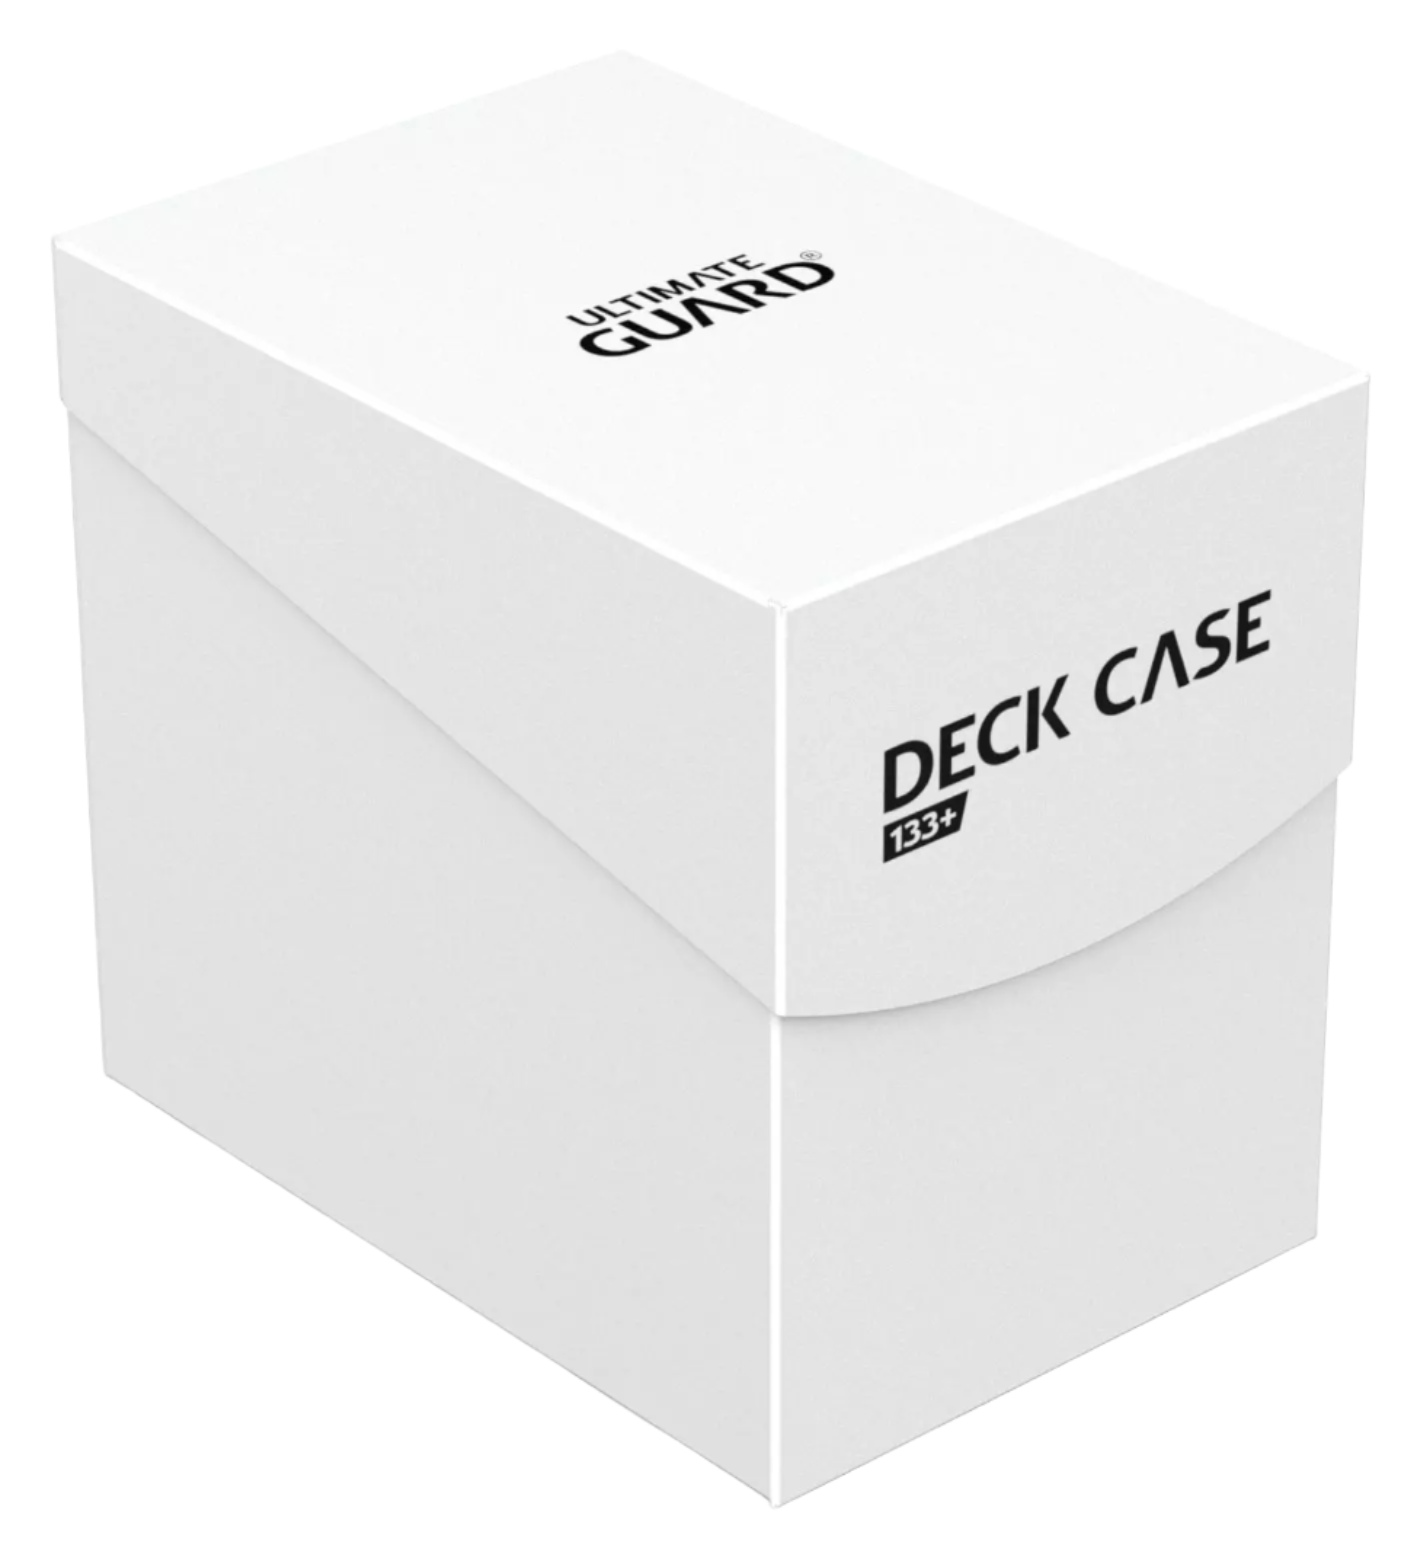 Ultimate Guard - 133+ Deck Case - White